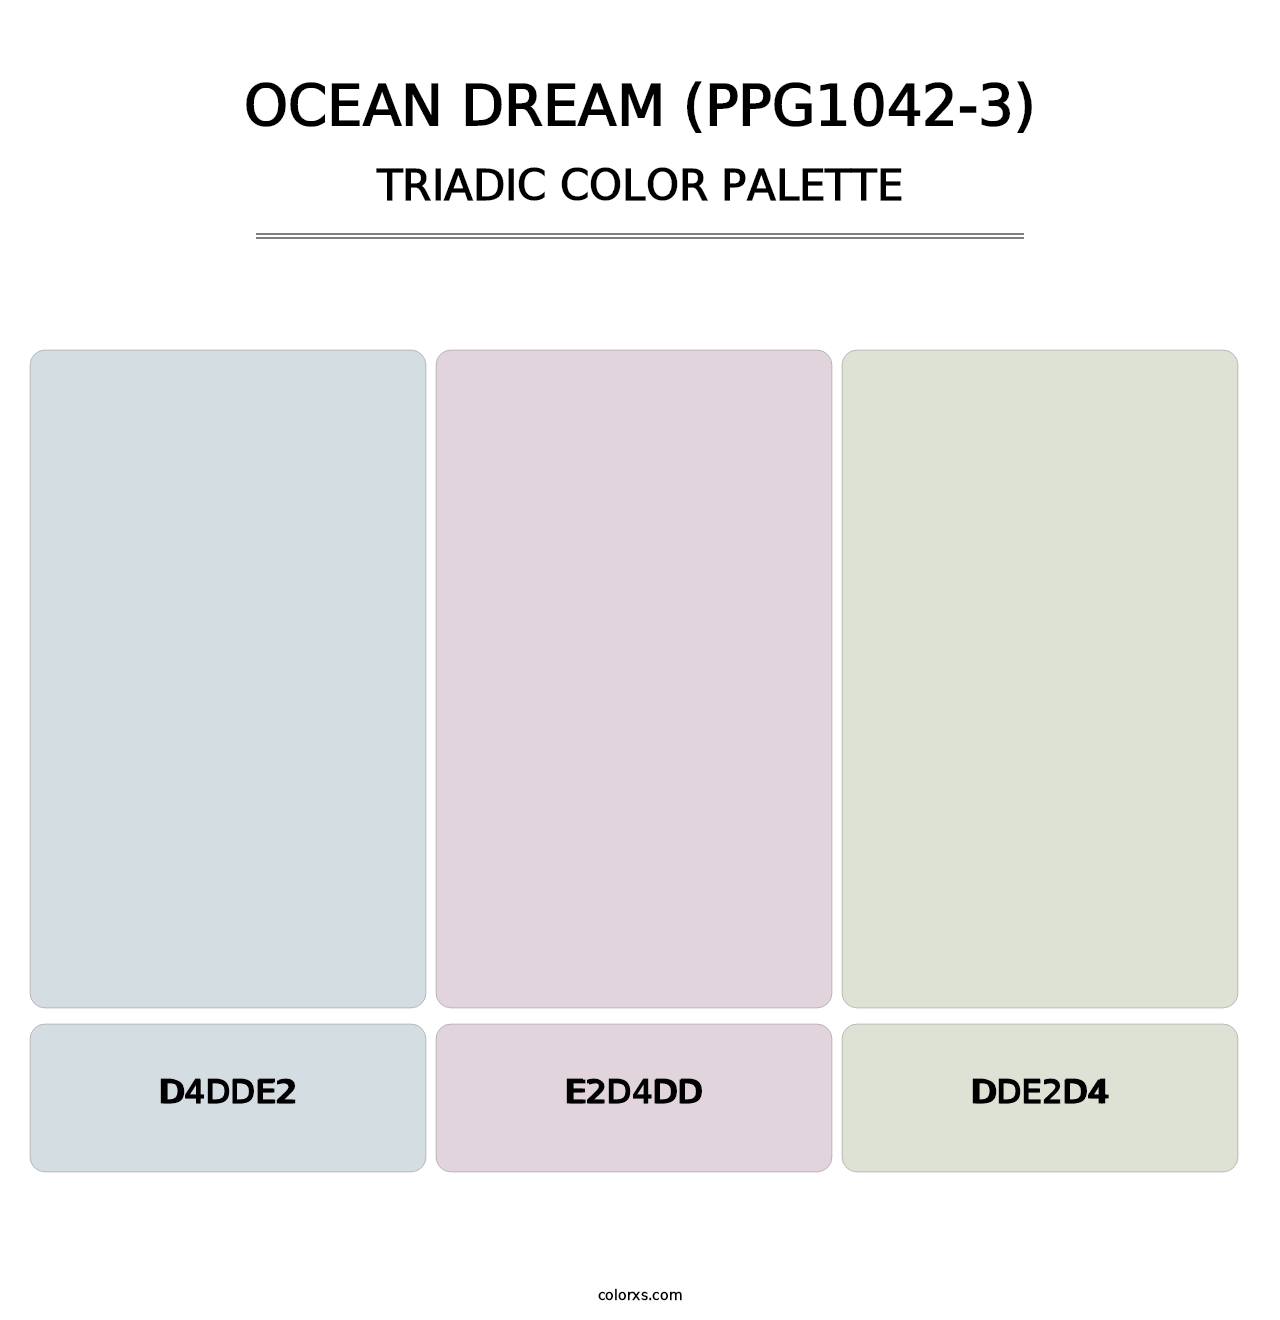 Ocean Dream (PPG1042-3) - Triadic Color Palette